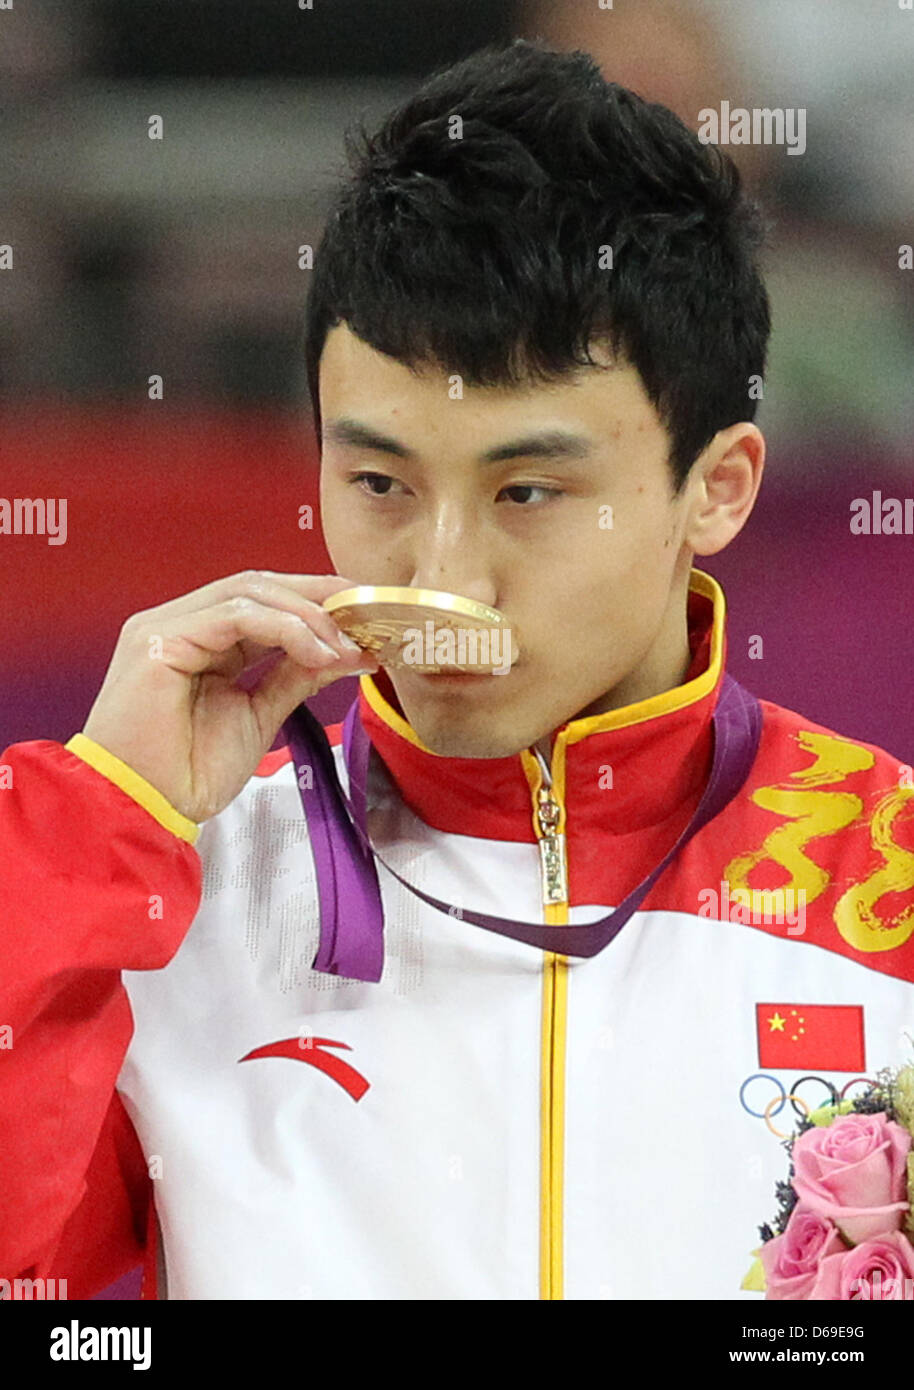 Gewinner der Goldmedaille Zhe Feng China küsst seine Medaille nach der Männer Barren final in North Greenwich Arena auf die 2012 Olympischen Spiele in London, London, Großbritannien, 7. August 2012. Foto: Friso Gentsch Dpa +++(c) Dpa - Bildfunk +++ Stockfoto